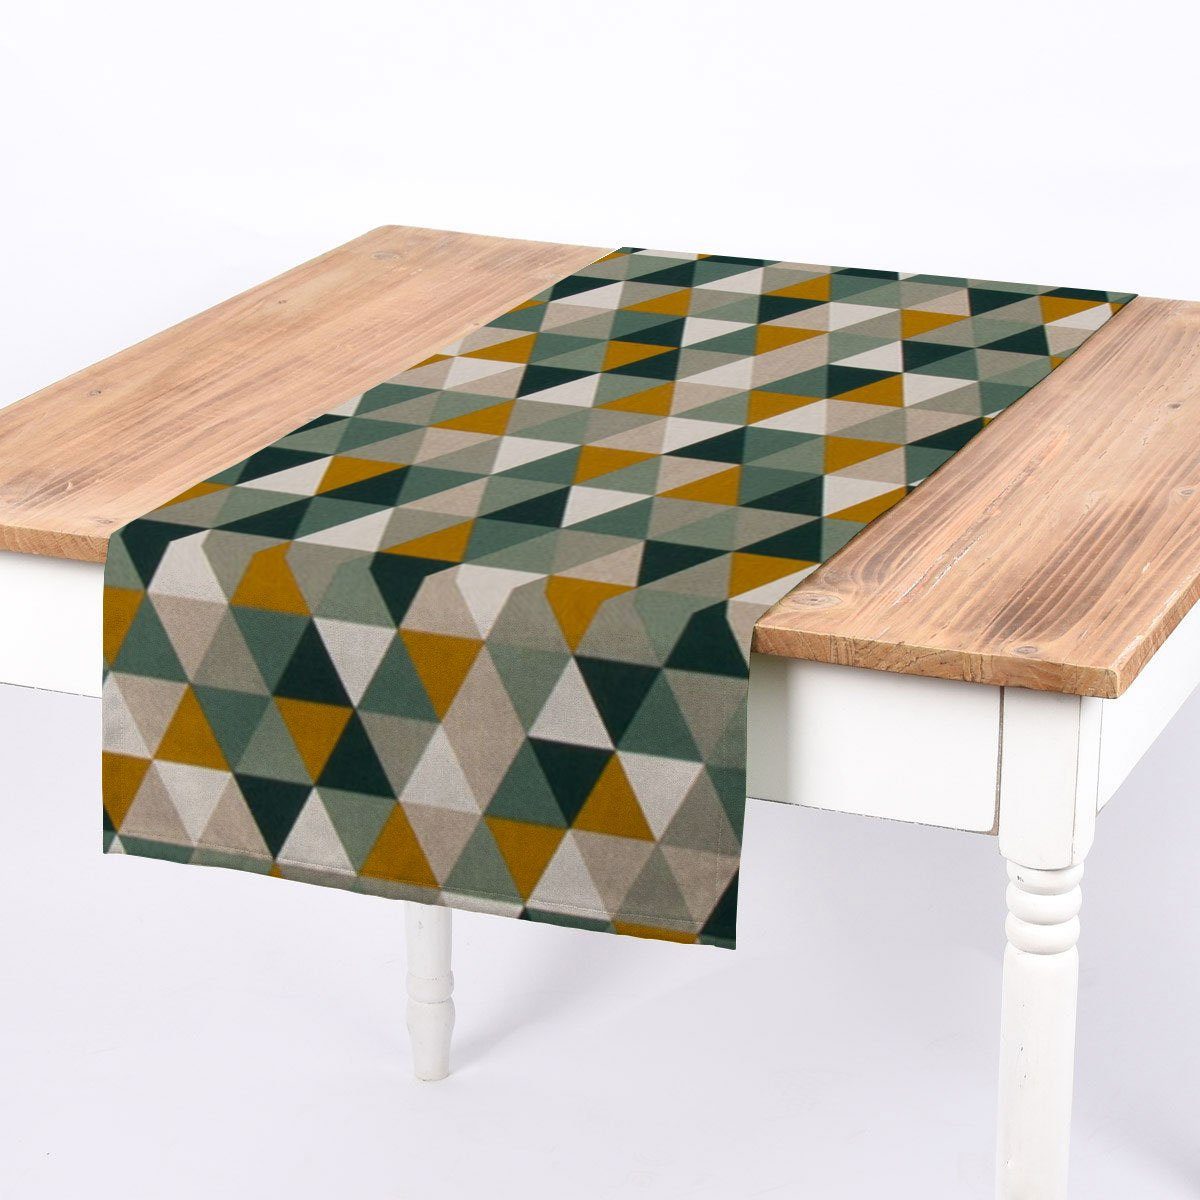 SCHÖNER LEBEN. Tischläufer SCHÖNER LEBEN. Tischläufer Dreiecke natur grün gelb 40x160cm, handmade